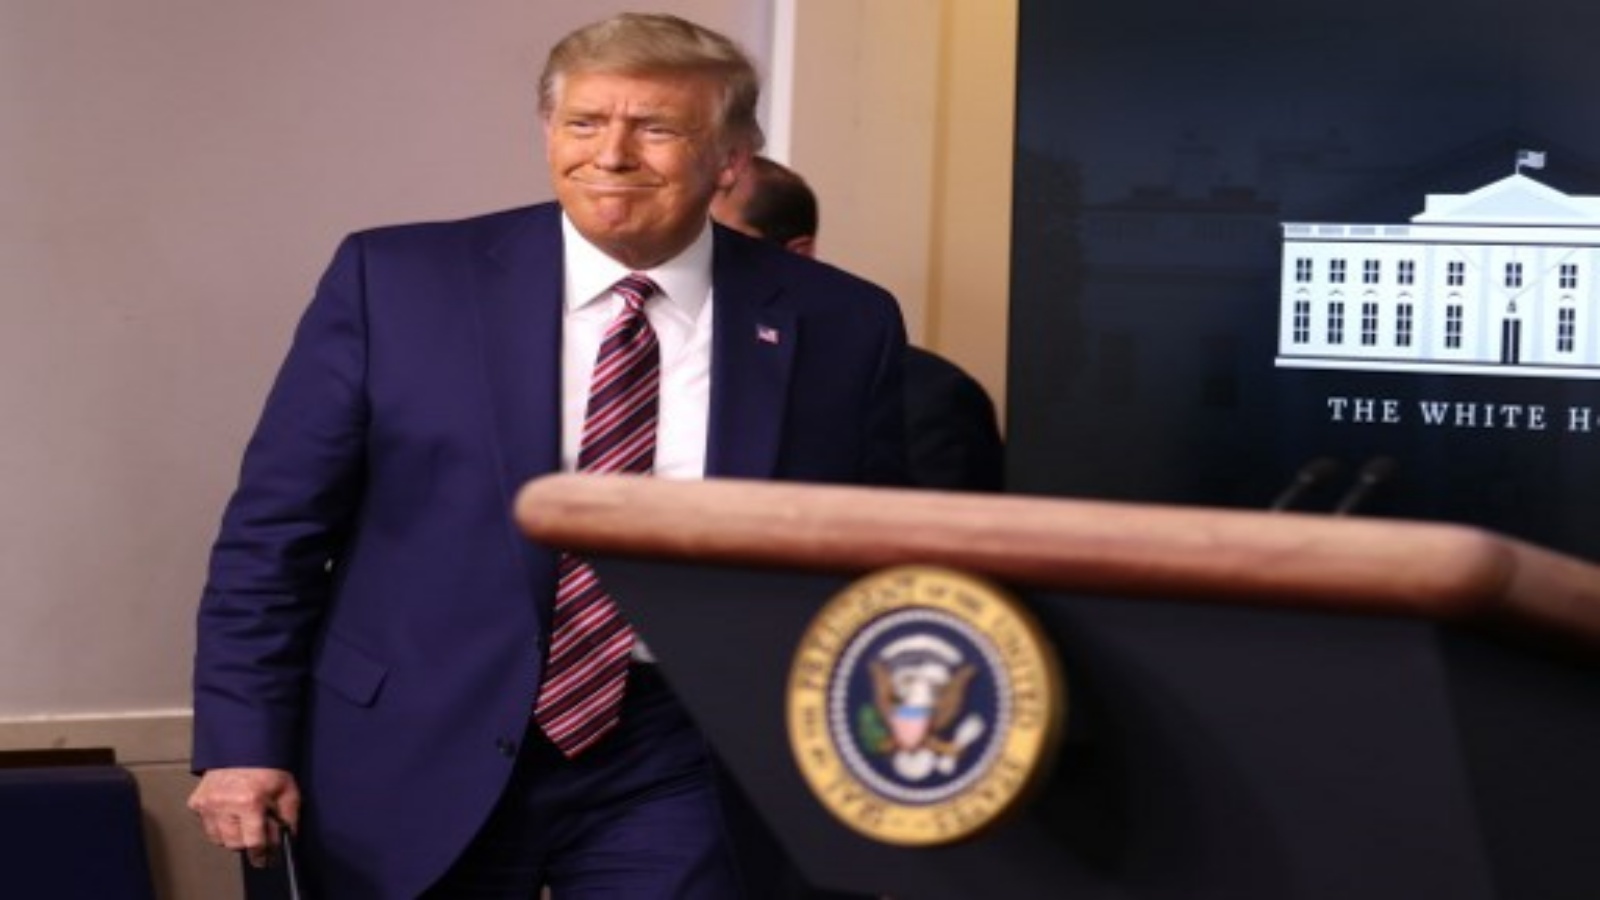  الرئيس الأميركي دونالد ترمب في غرفة الإحاطة الصحفية لجيمس برادي بالبيت الأبيض في 20 نوفمبر 2020 في واشنطن العاصمة.